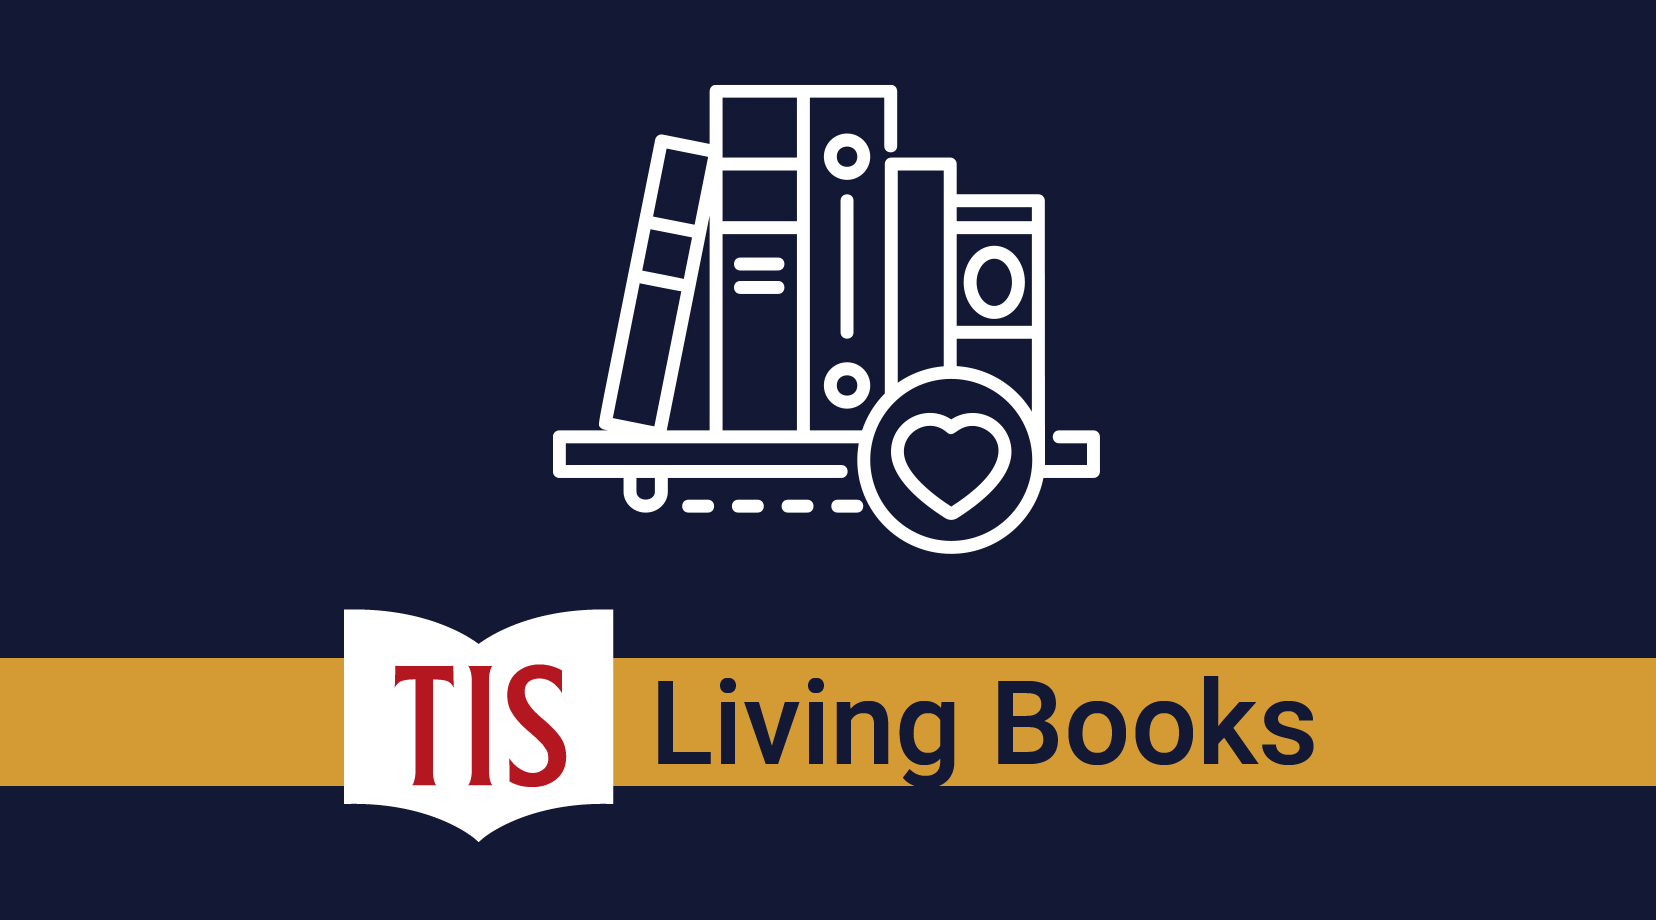 TIS Living Books